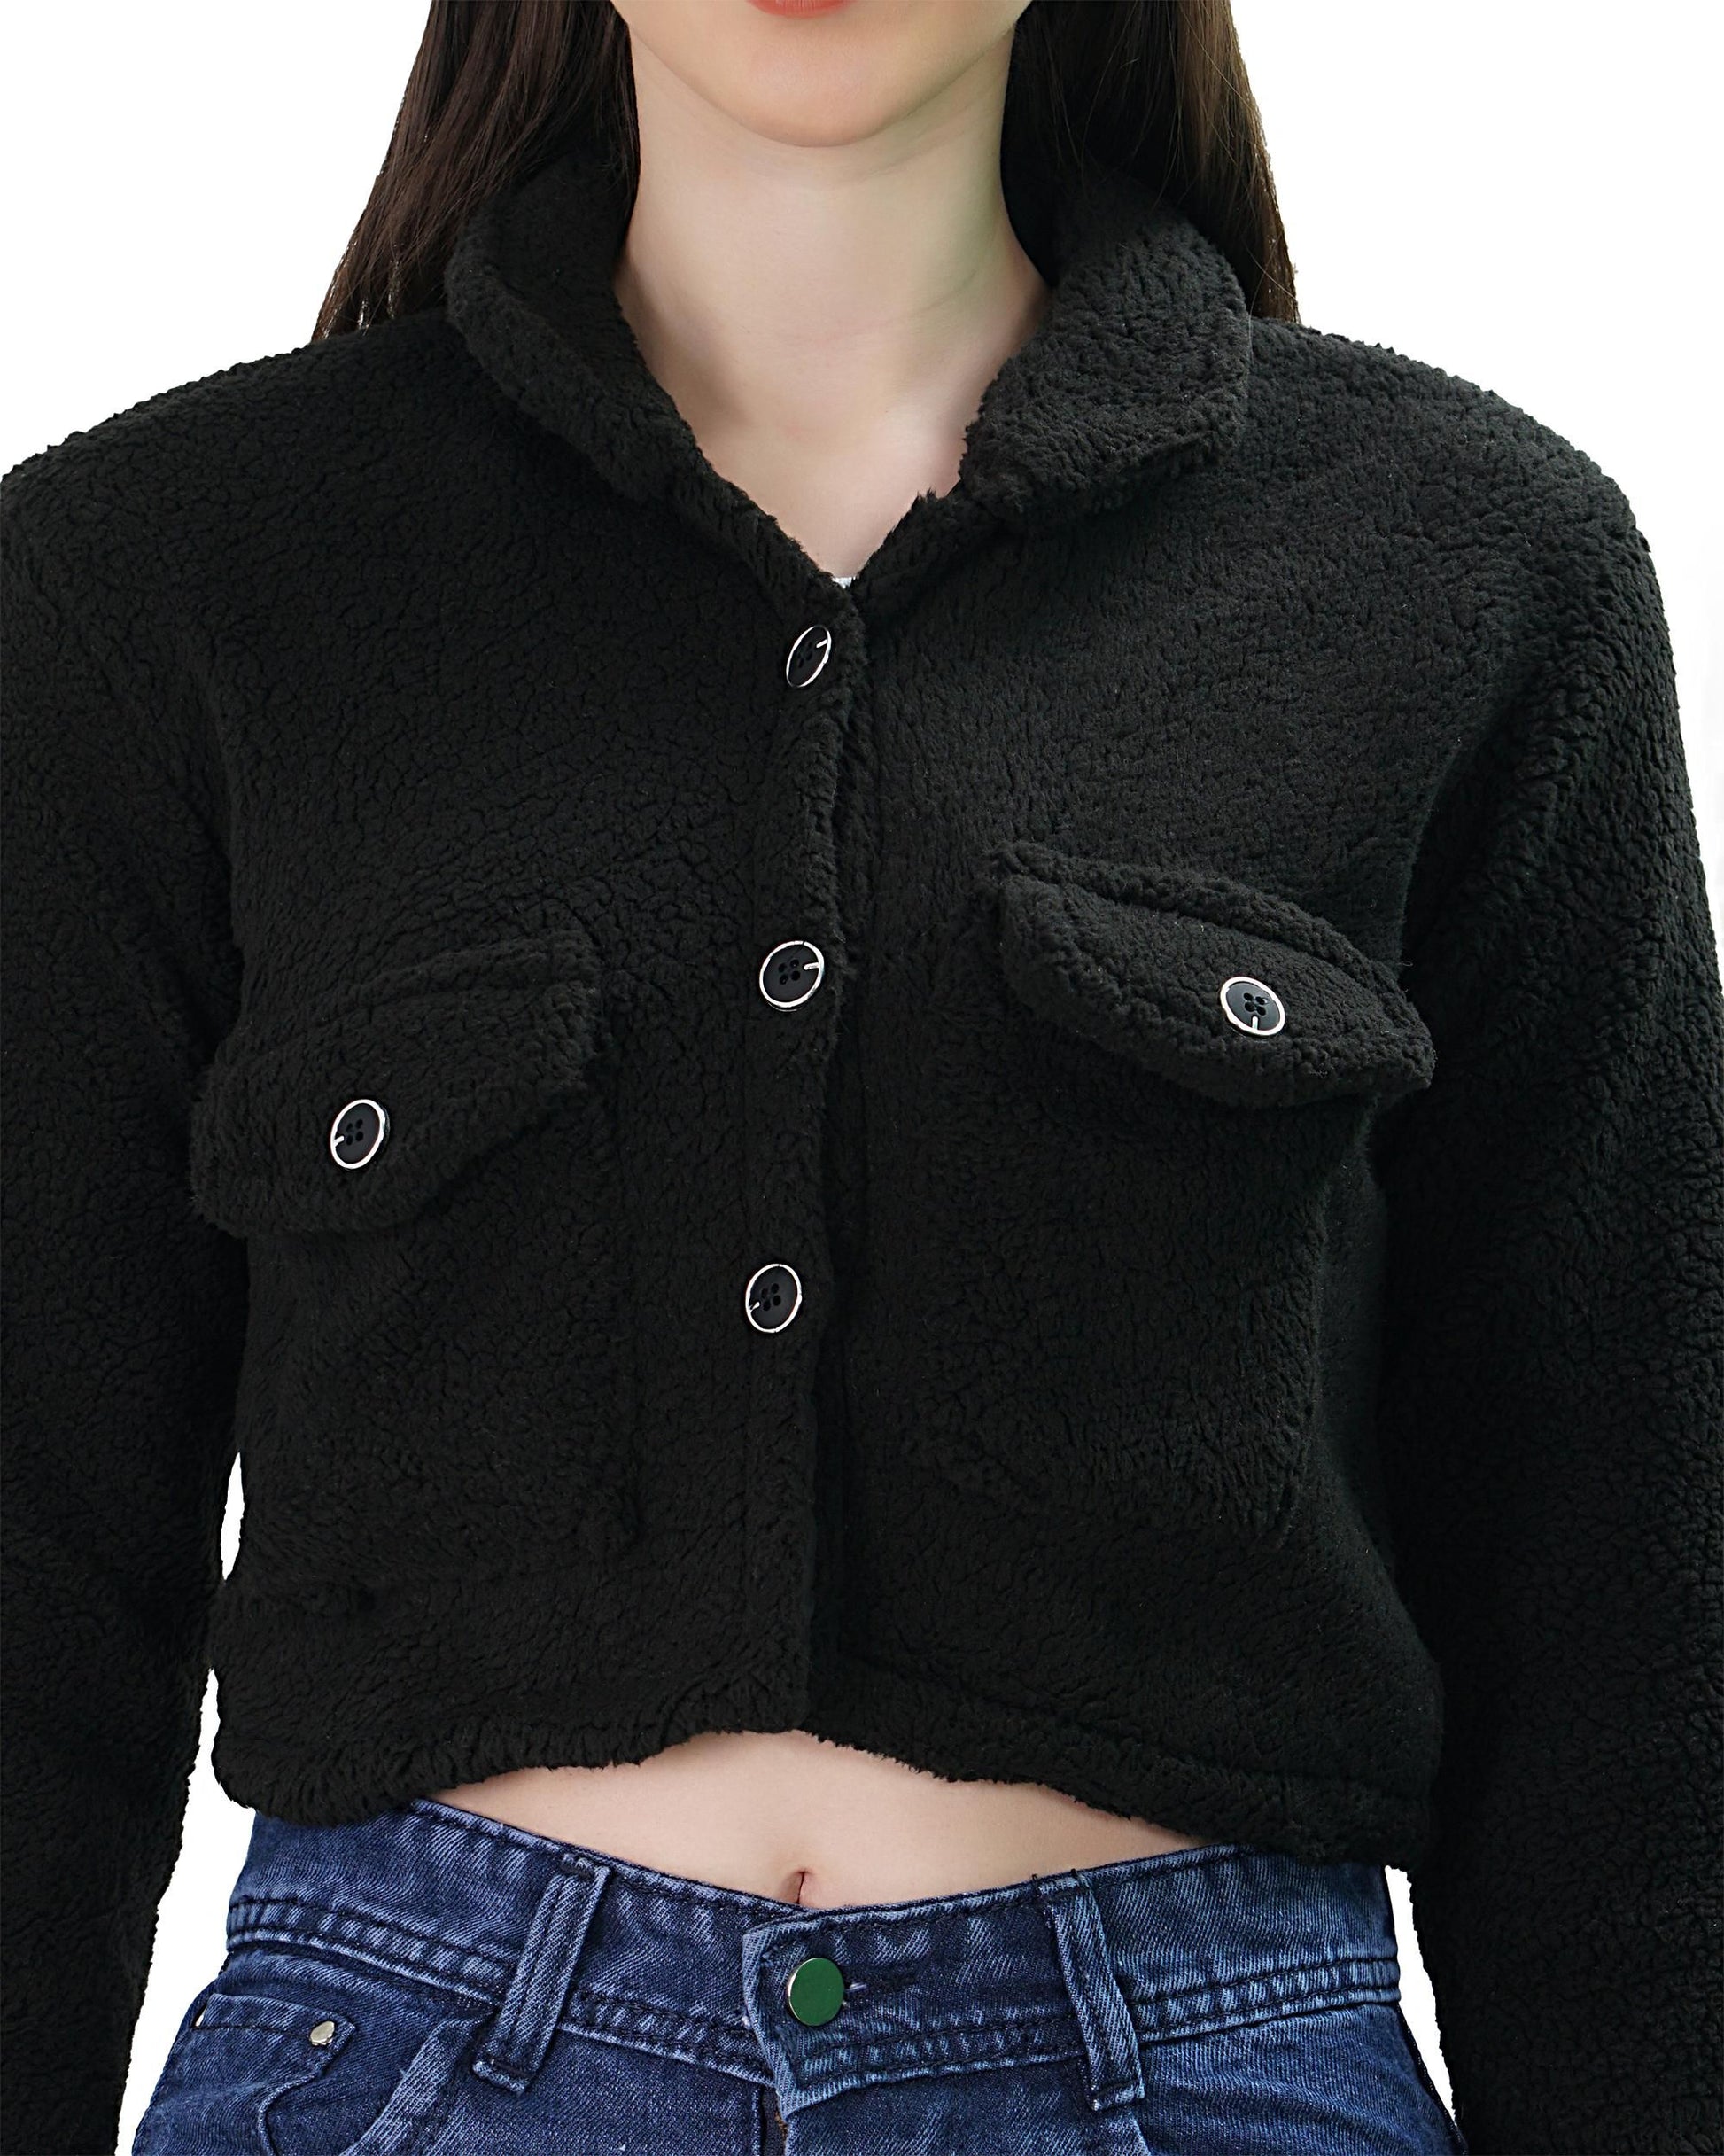 Wool Jacket For Women (Black)